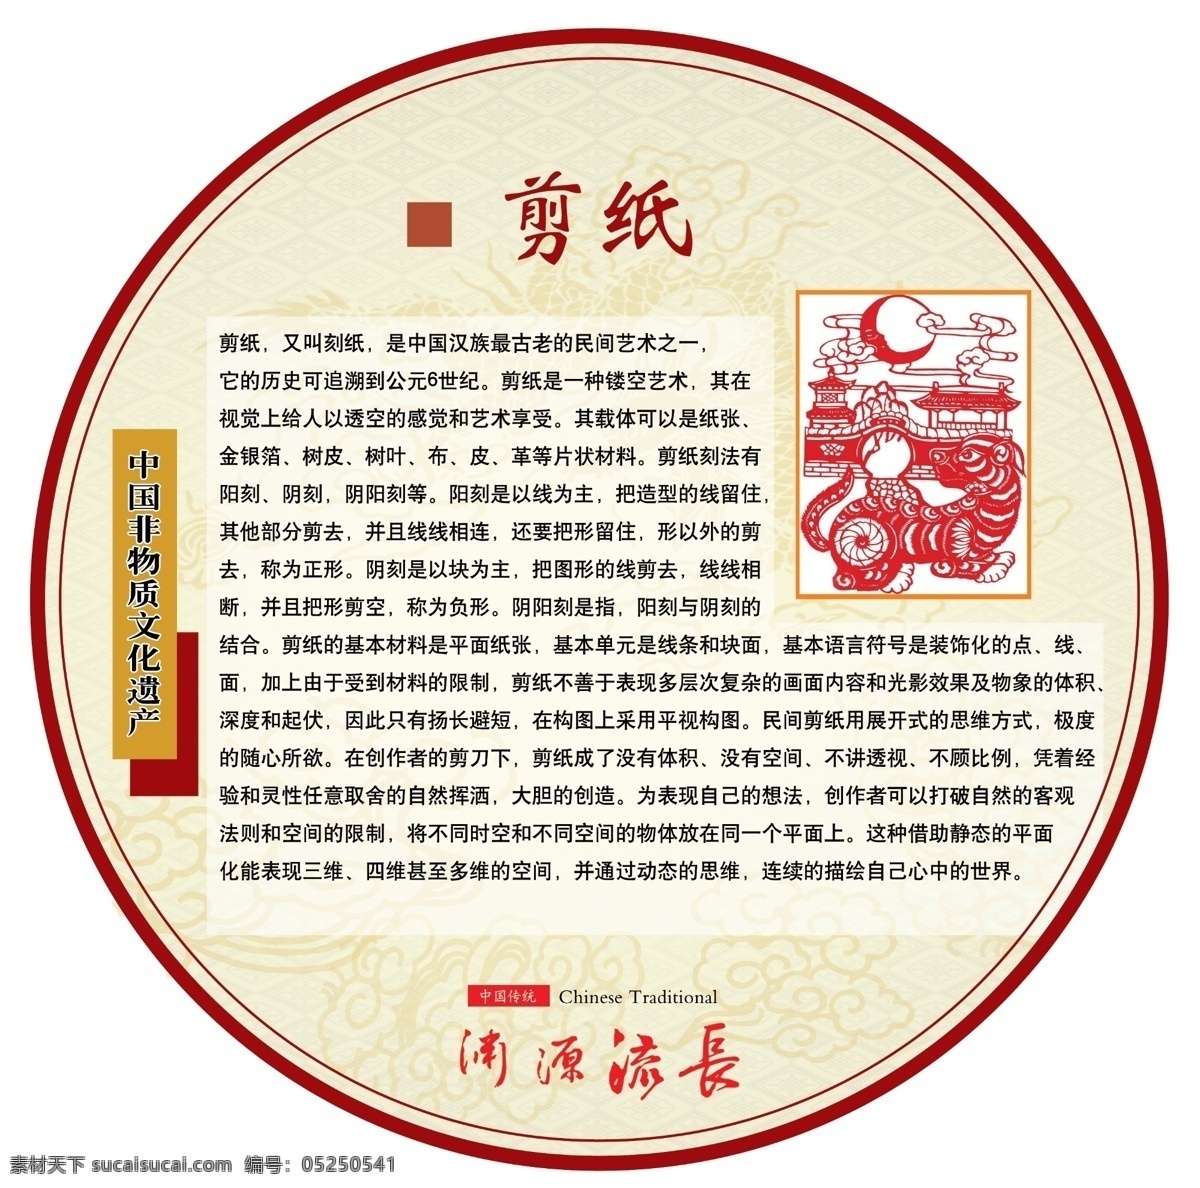 传统文化展板 劳技展板 校园文化 展板 非物质文化 中国文化 校园展板 劳技教室 剪纸 蜡染 泥塑 陶瓷